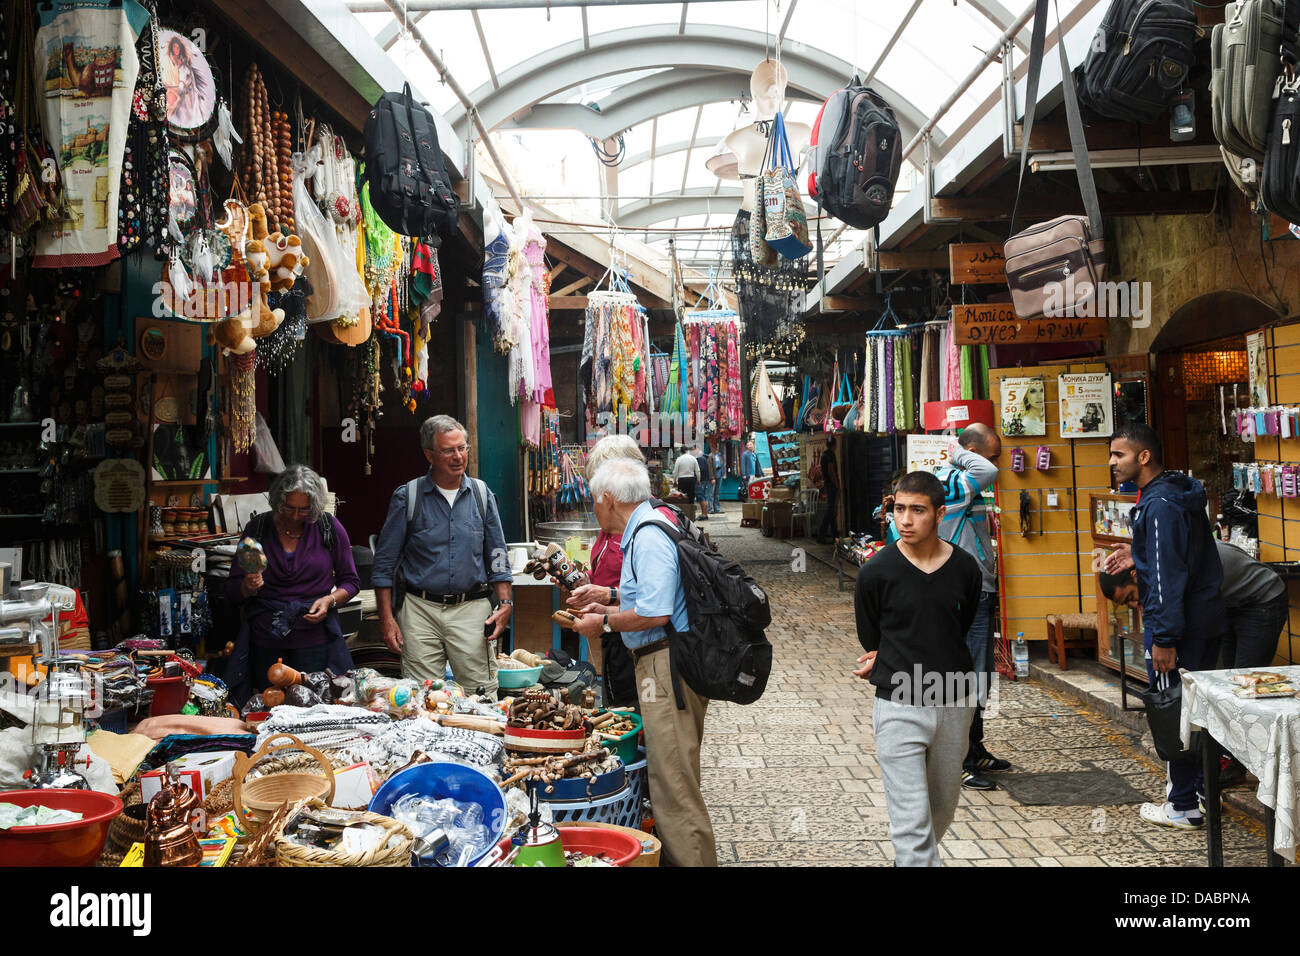 Le marché dans la vieille ville d'Akko (Acre), Israël, Moyen Orient Banque D'Images